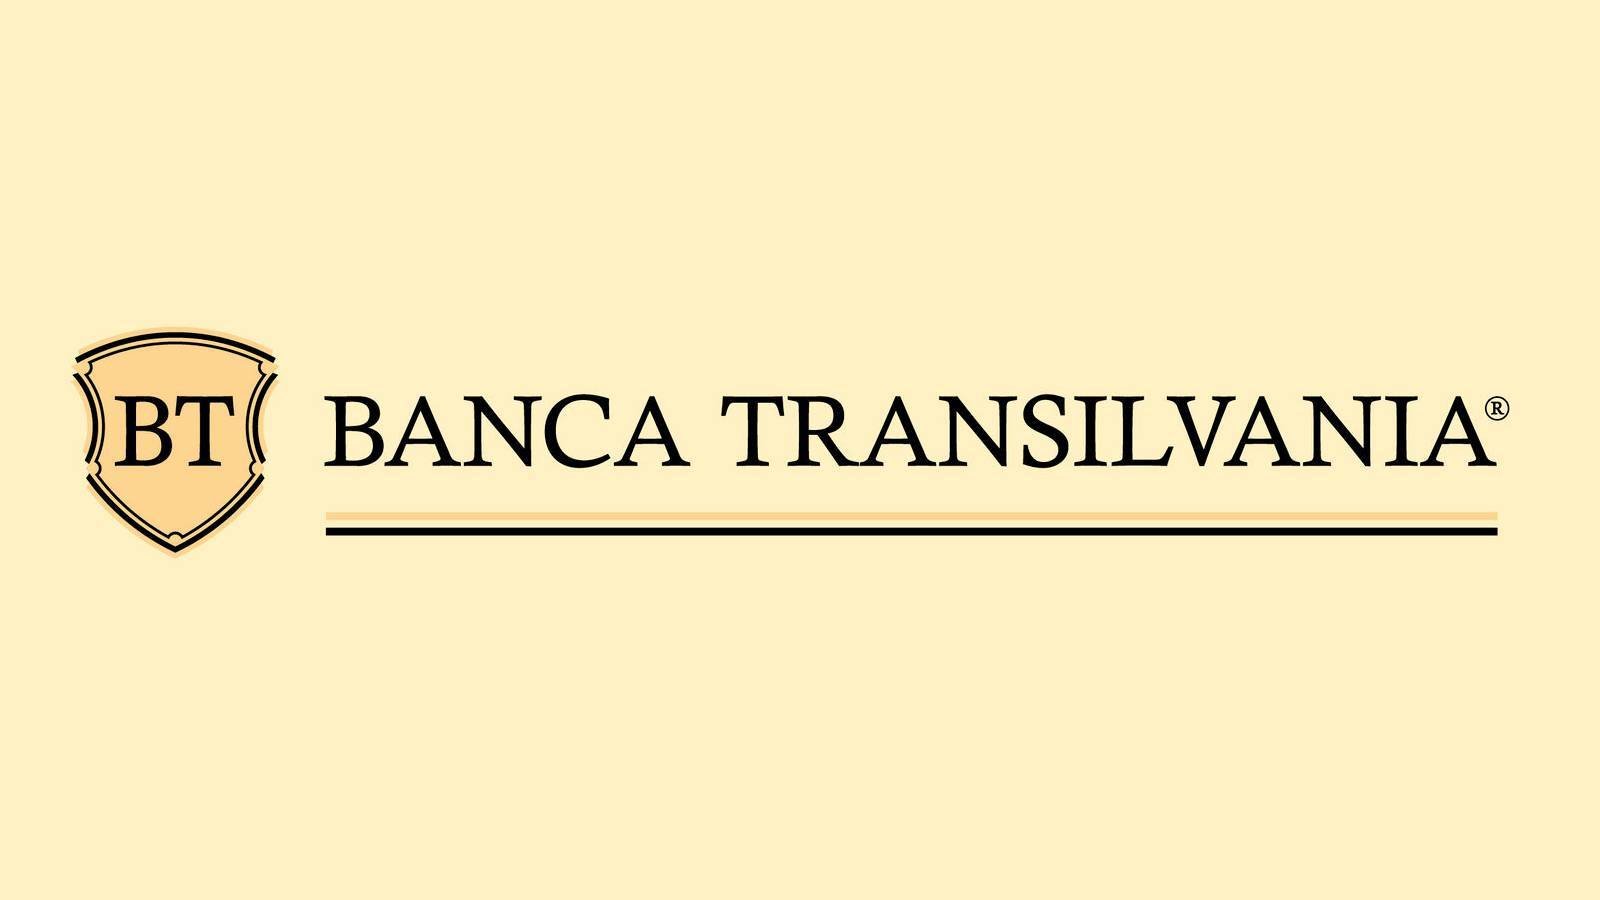 BANCA Transilvania rapporterar